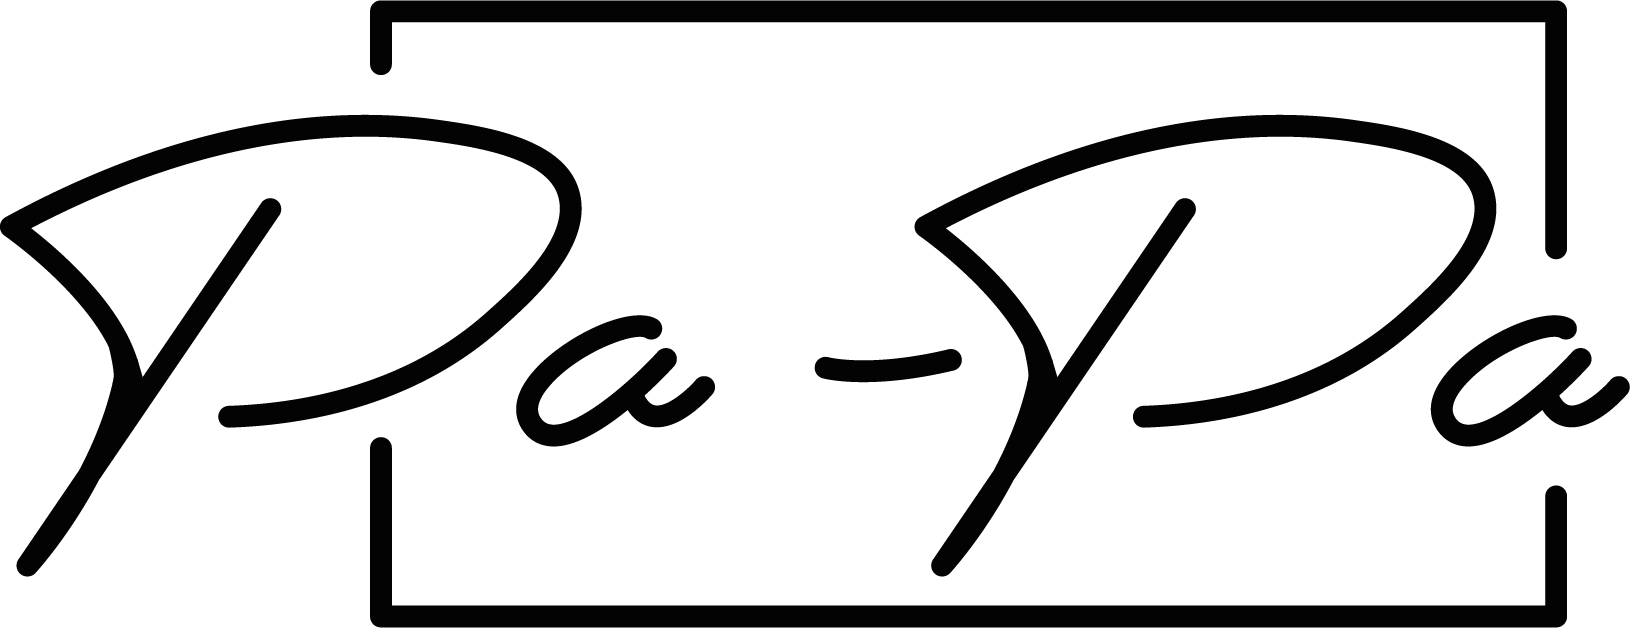 Pa-Pa logo